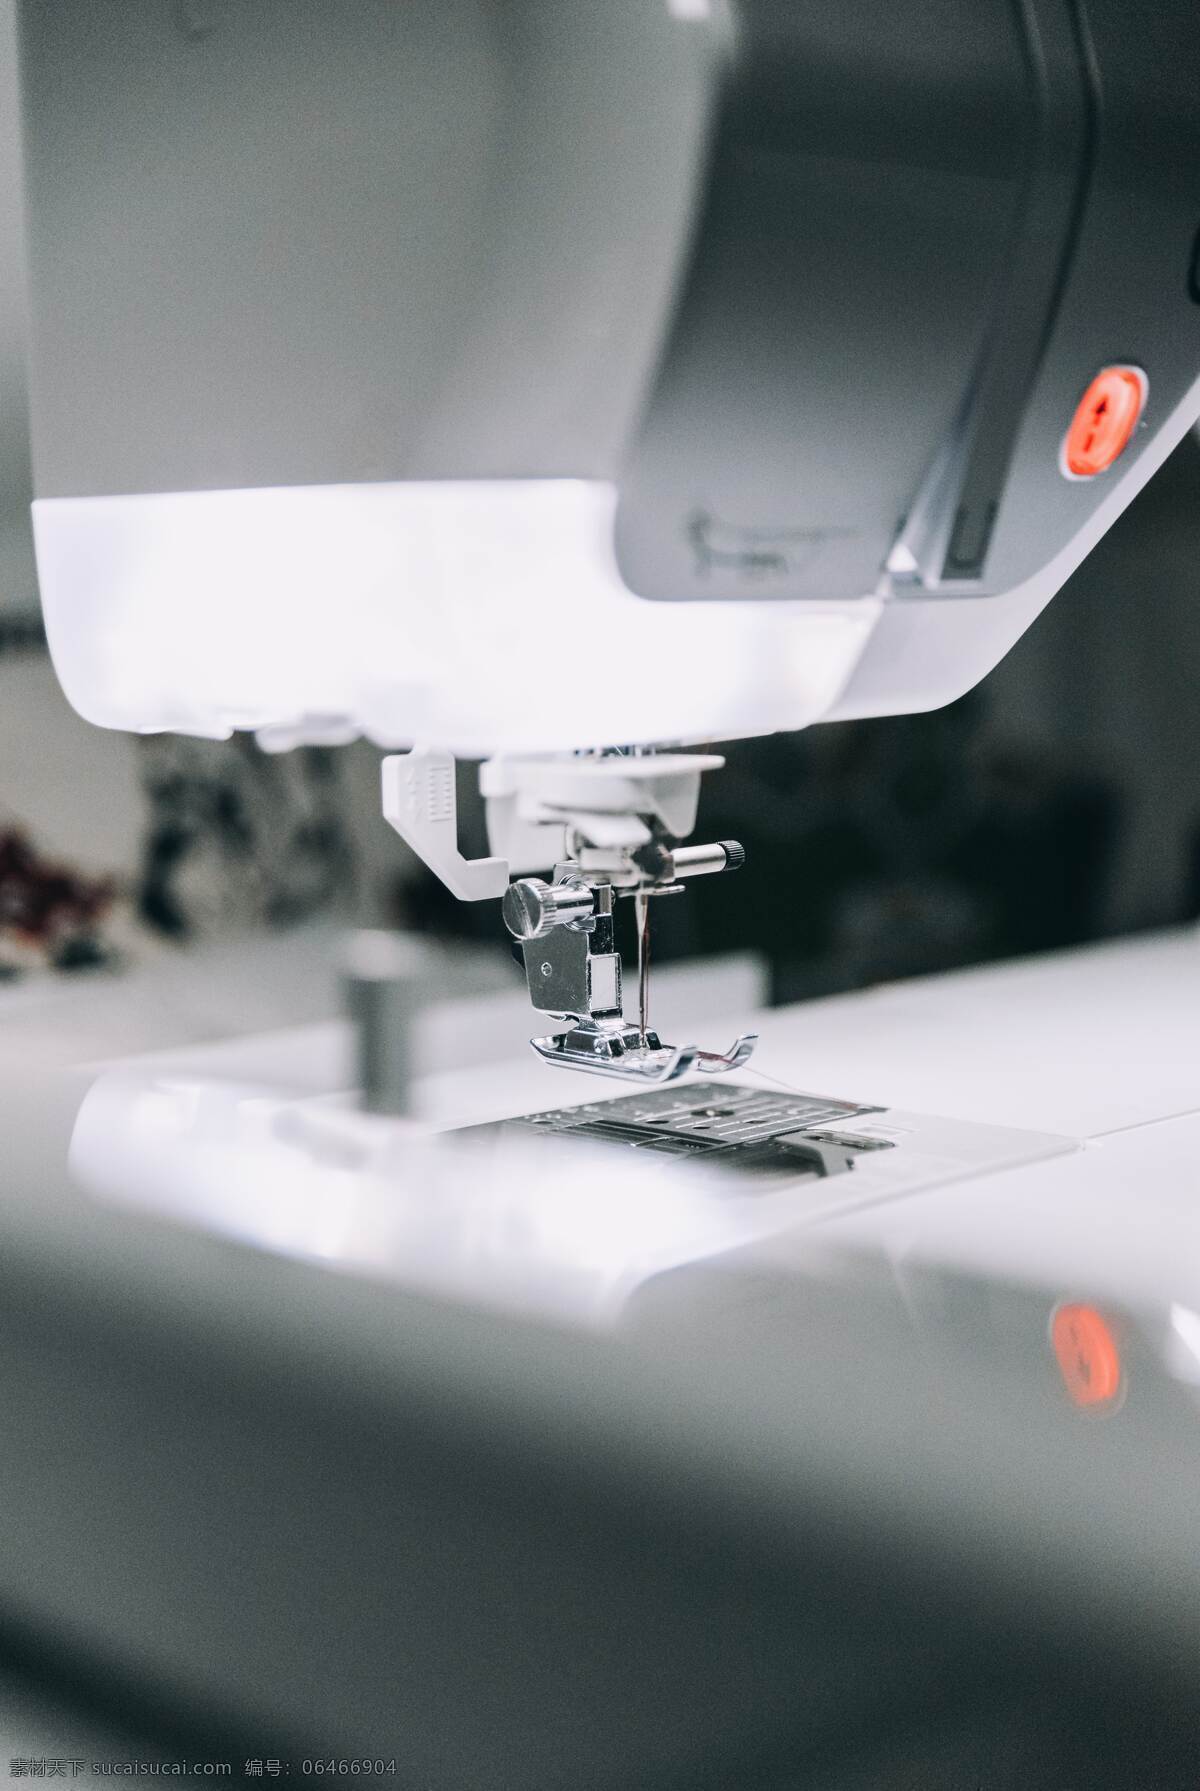 缝纫机图片 缝纫机 缝纫 自动 工作 运行中 做服装 生活用品 生活百科 数码家电